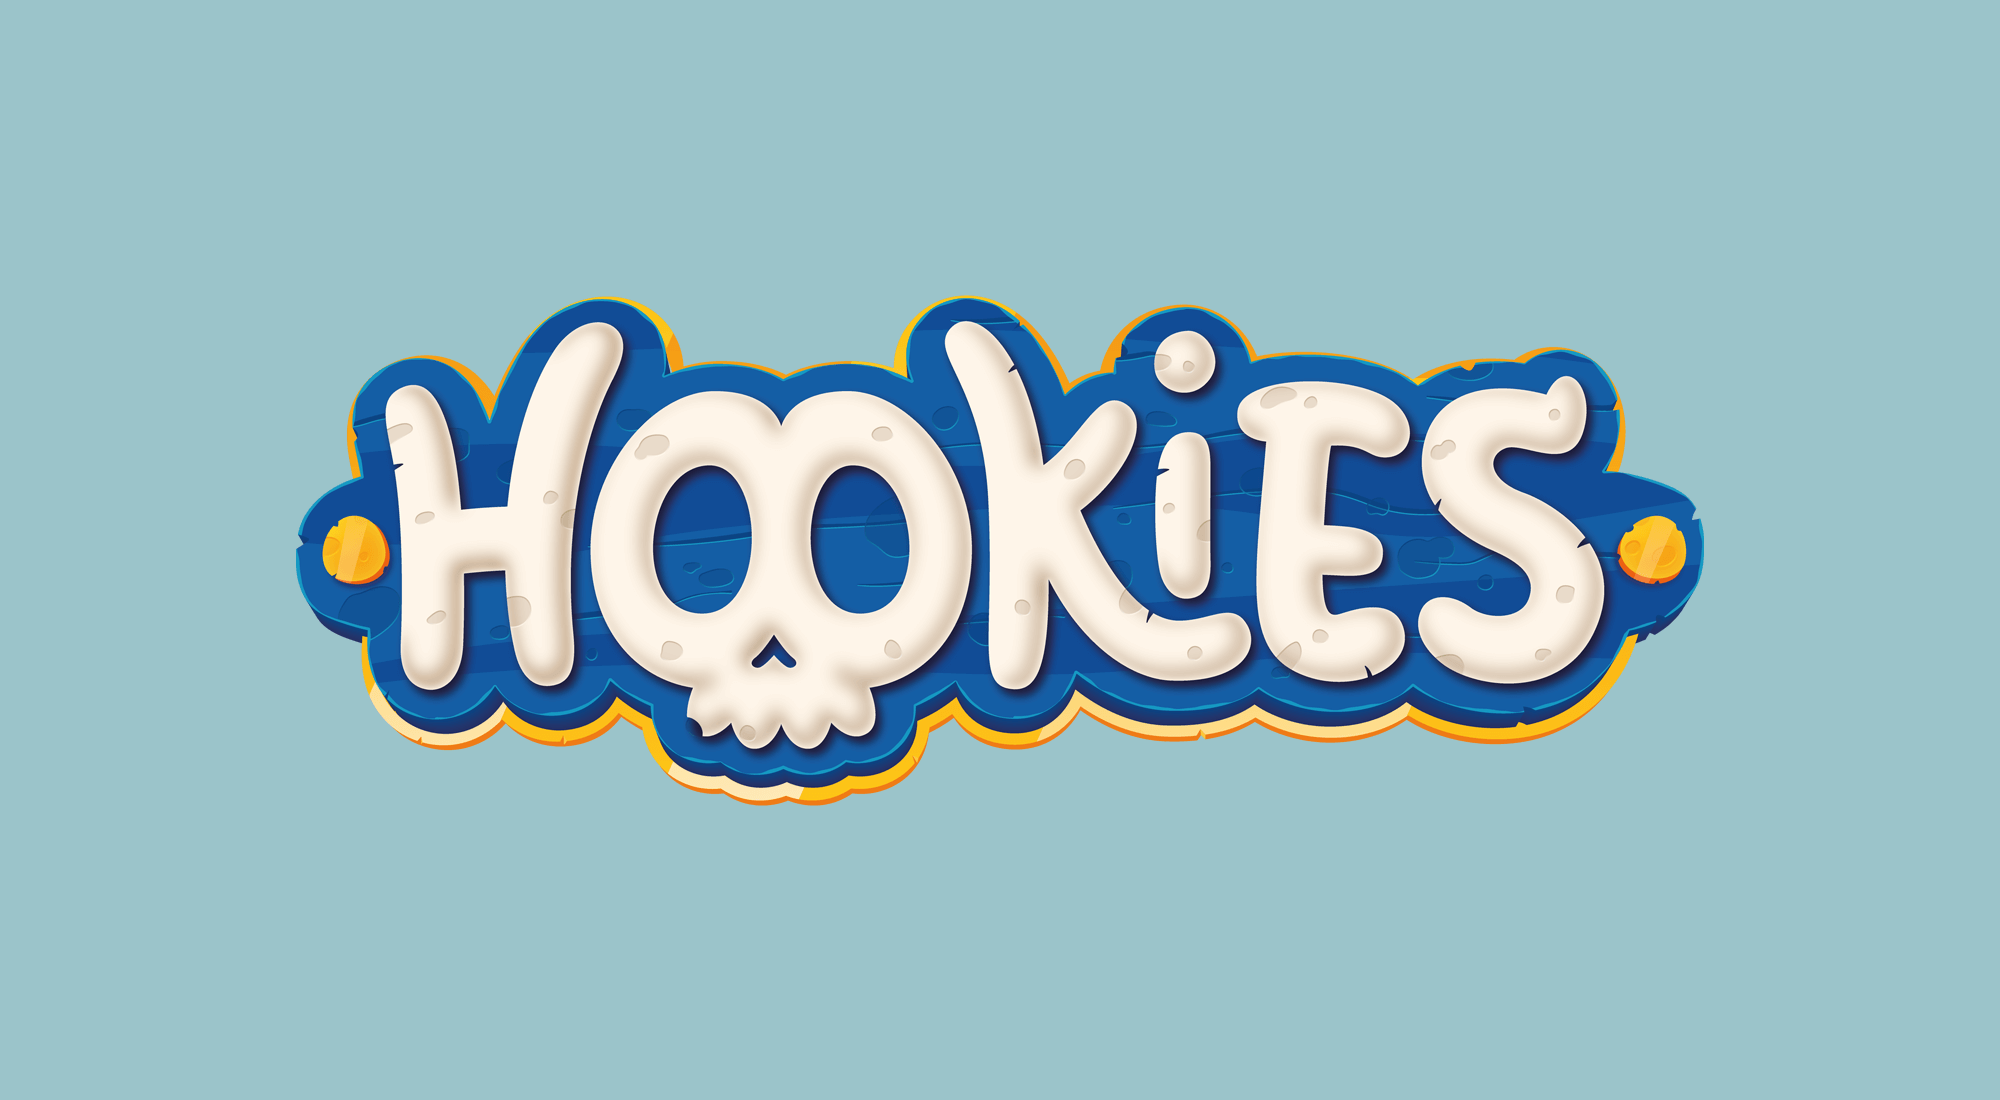 HOOKIES